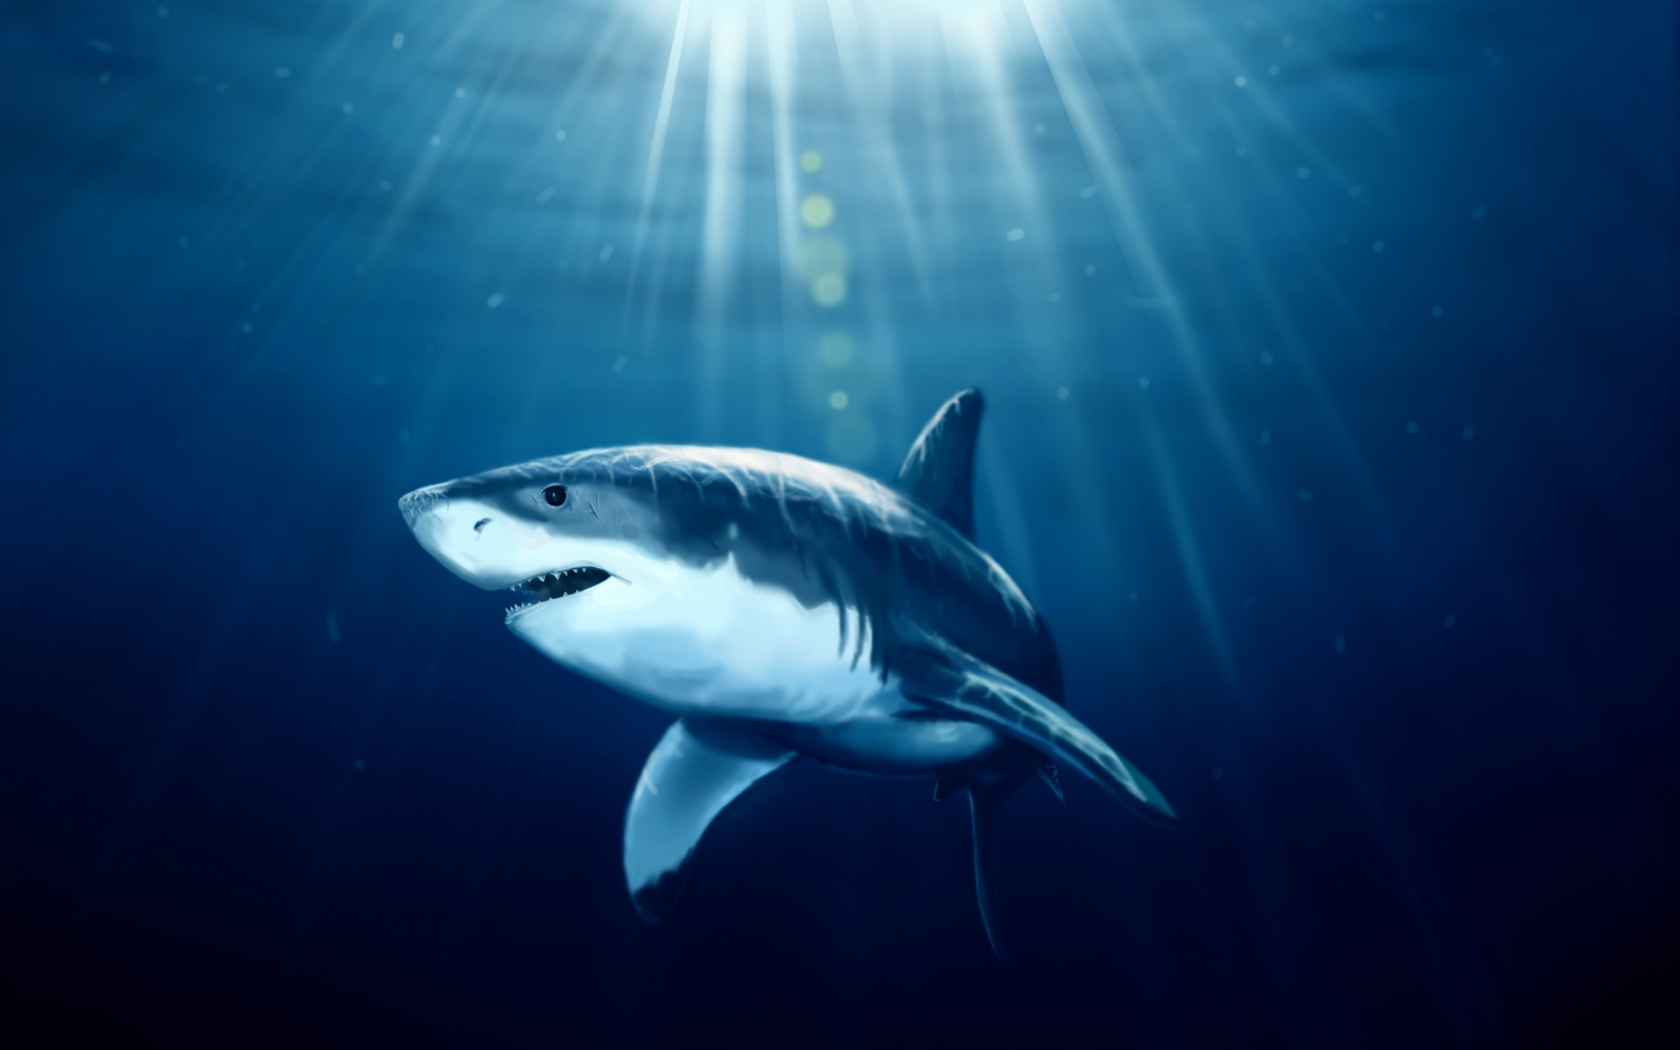 Shark Under Water for 1680 x 1050 widescreen resolution